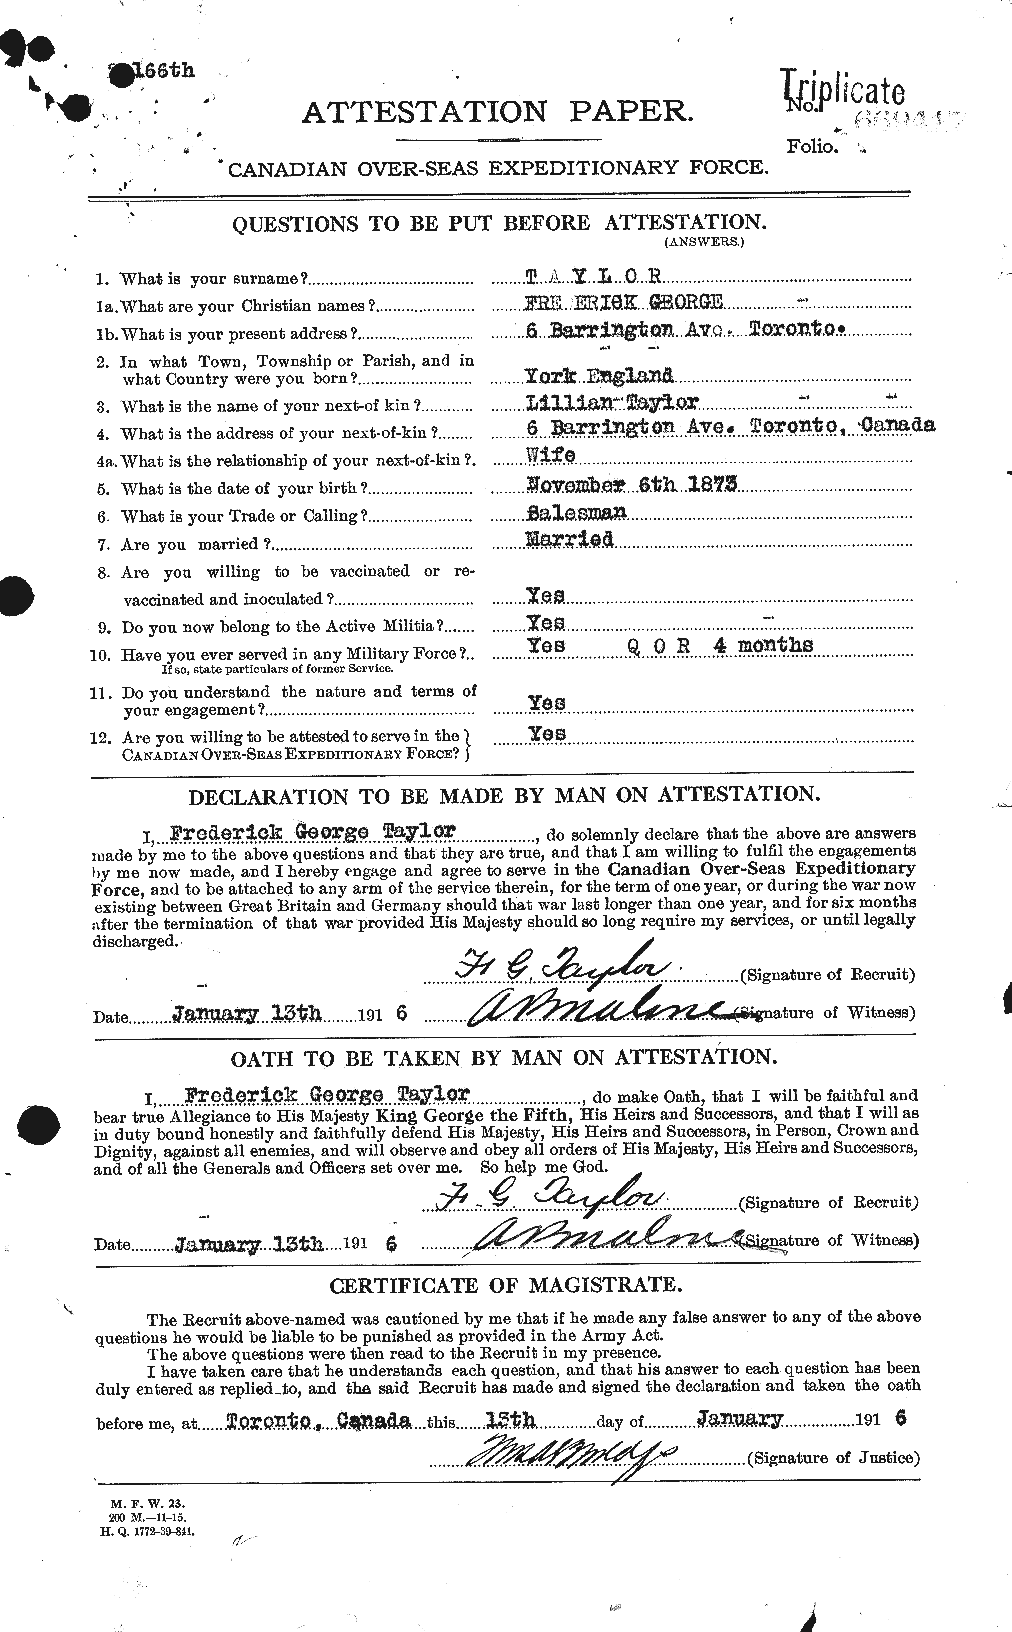 Dossiers du Personnel de la Première Guerre mondiale - CEC 625801a